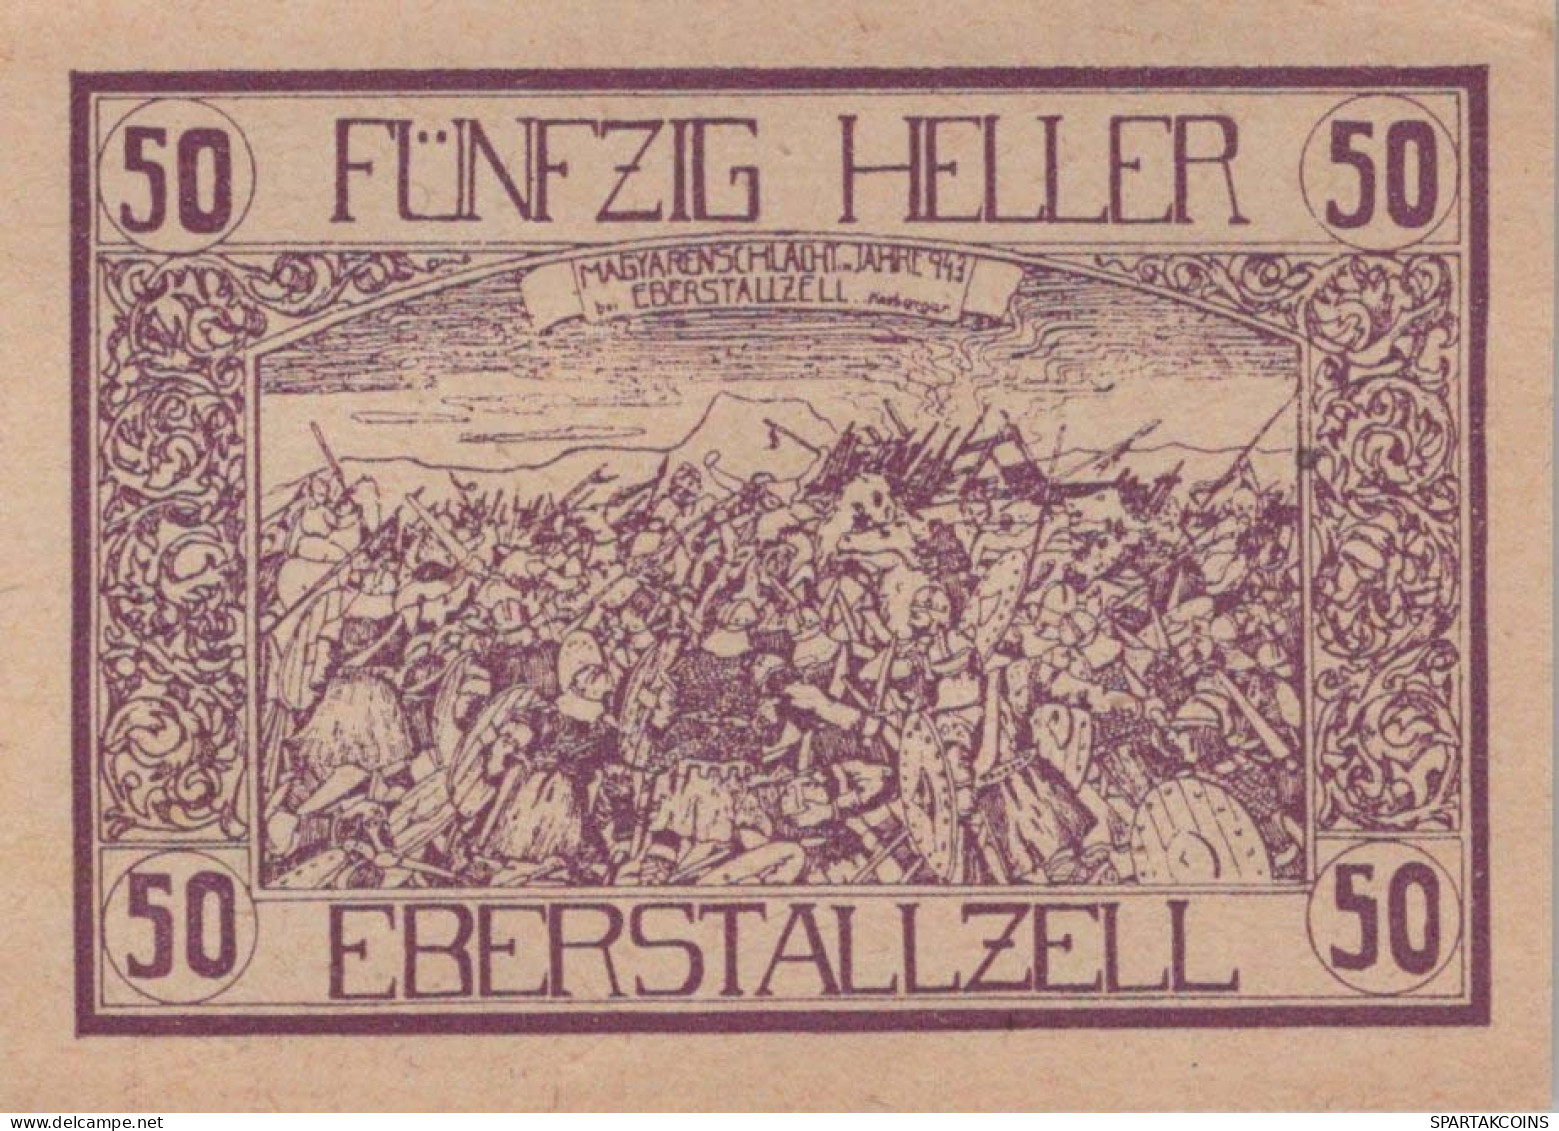 50 HELLER 1920 Stadt EBERSTALLZELL Oberösterreich Österreich Notgeld #PF767 - [11] Local Banknote Issues